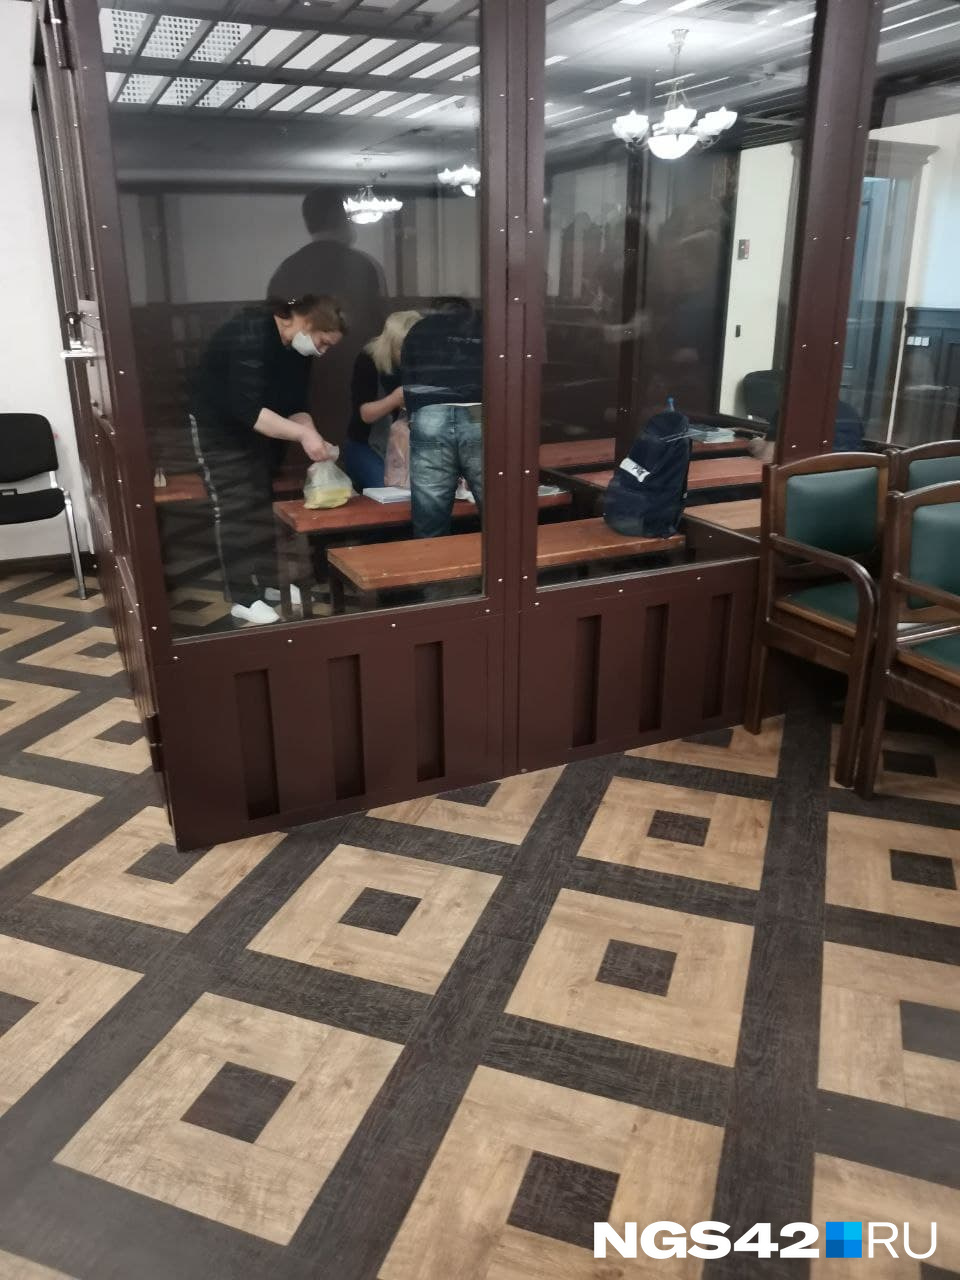 Сын Комковой помогает матери собрать бумаги, с которых она зачитывала свою речь